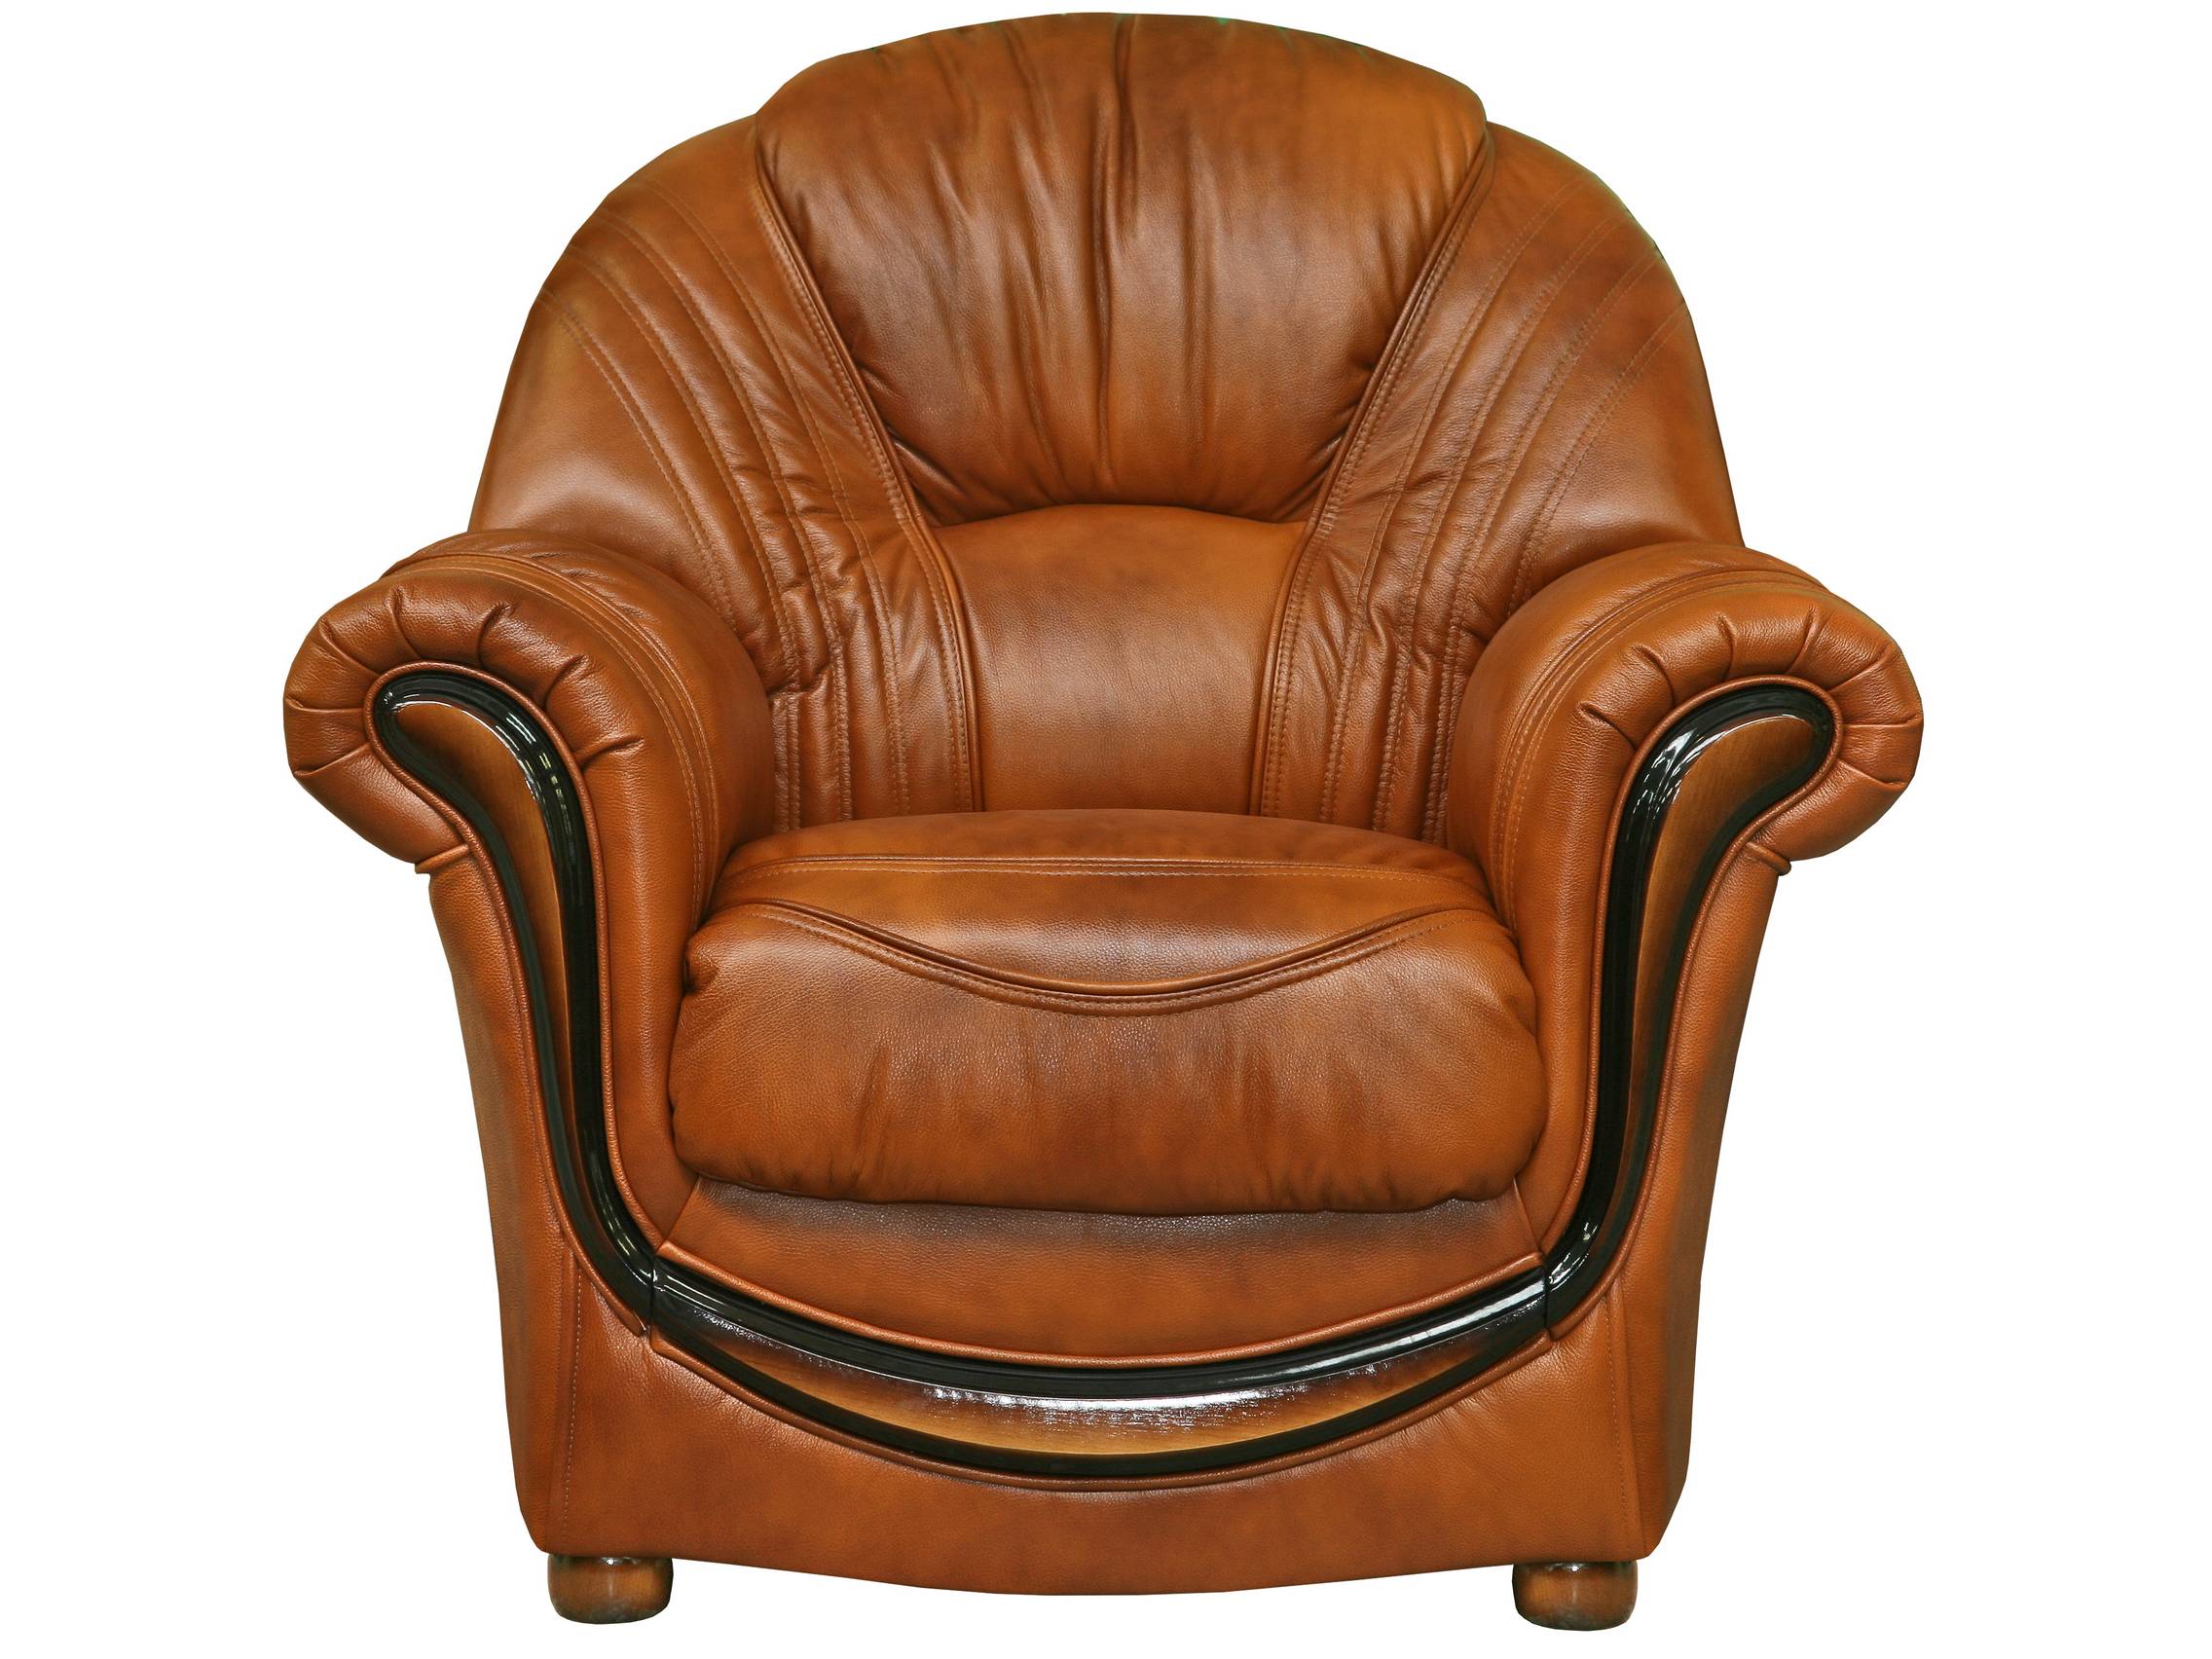 Мягкие кресла каталог. Кресло Вивальди Пинскдрев. Кресло Изабель 2 Пинскдрев кожа. Кресла мягкие. Кресло кожаное.